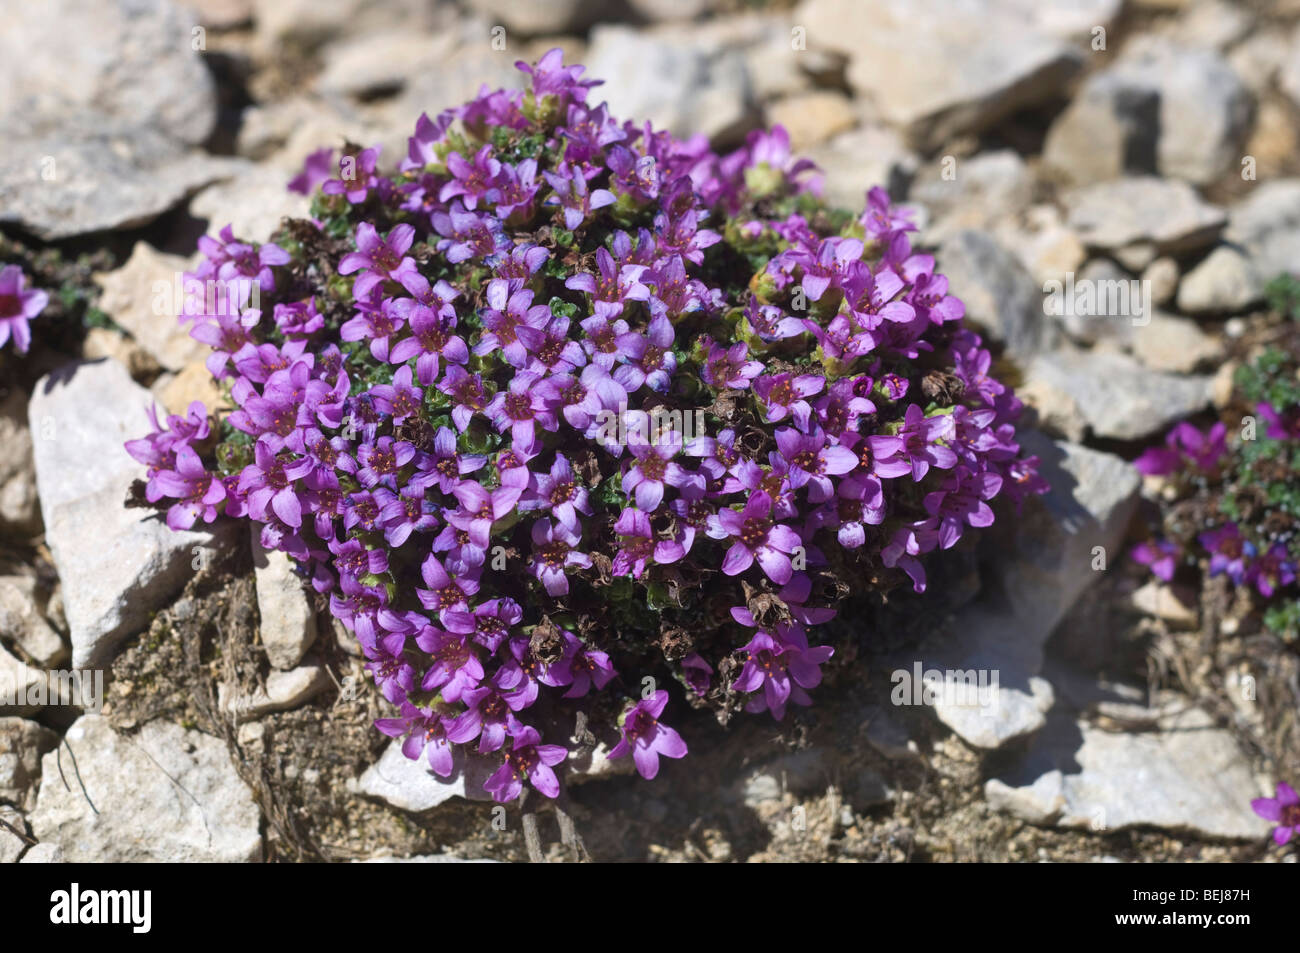 Saxifraga oppositifolia flowers, Bondone mountain, Trentino Alto Adige, Italy Stock Photo